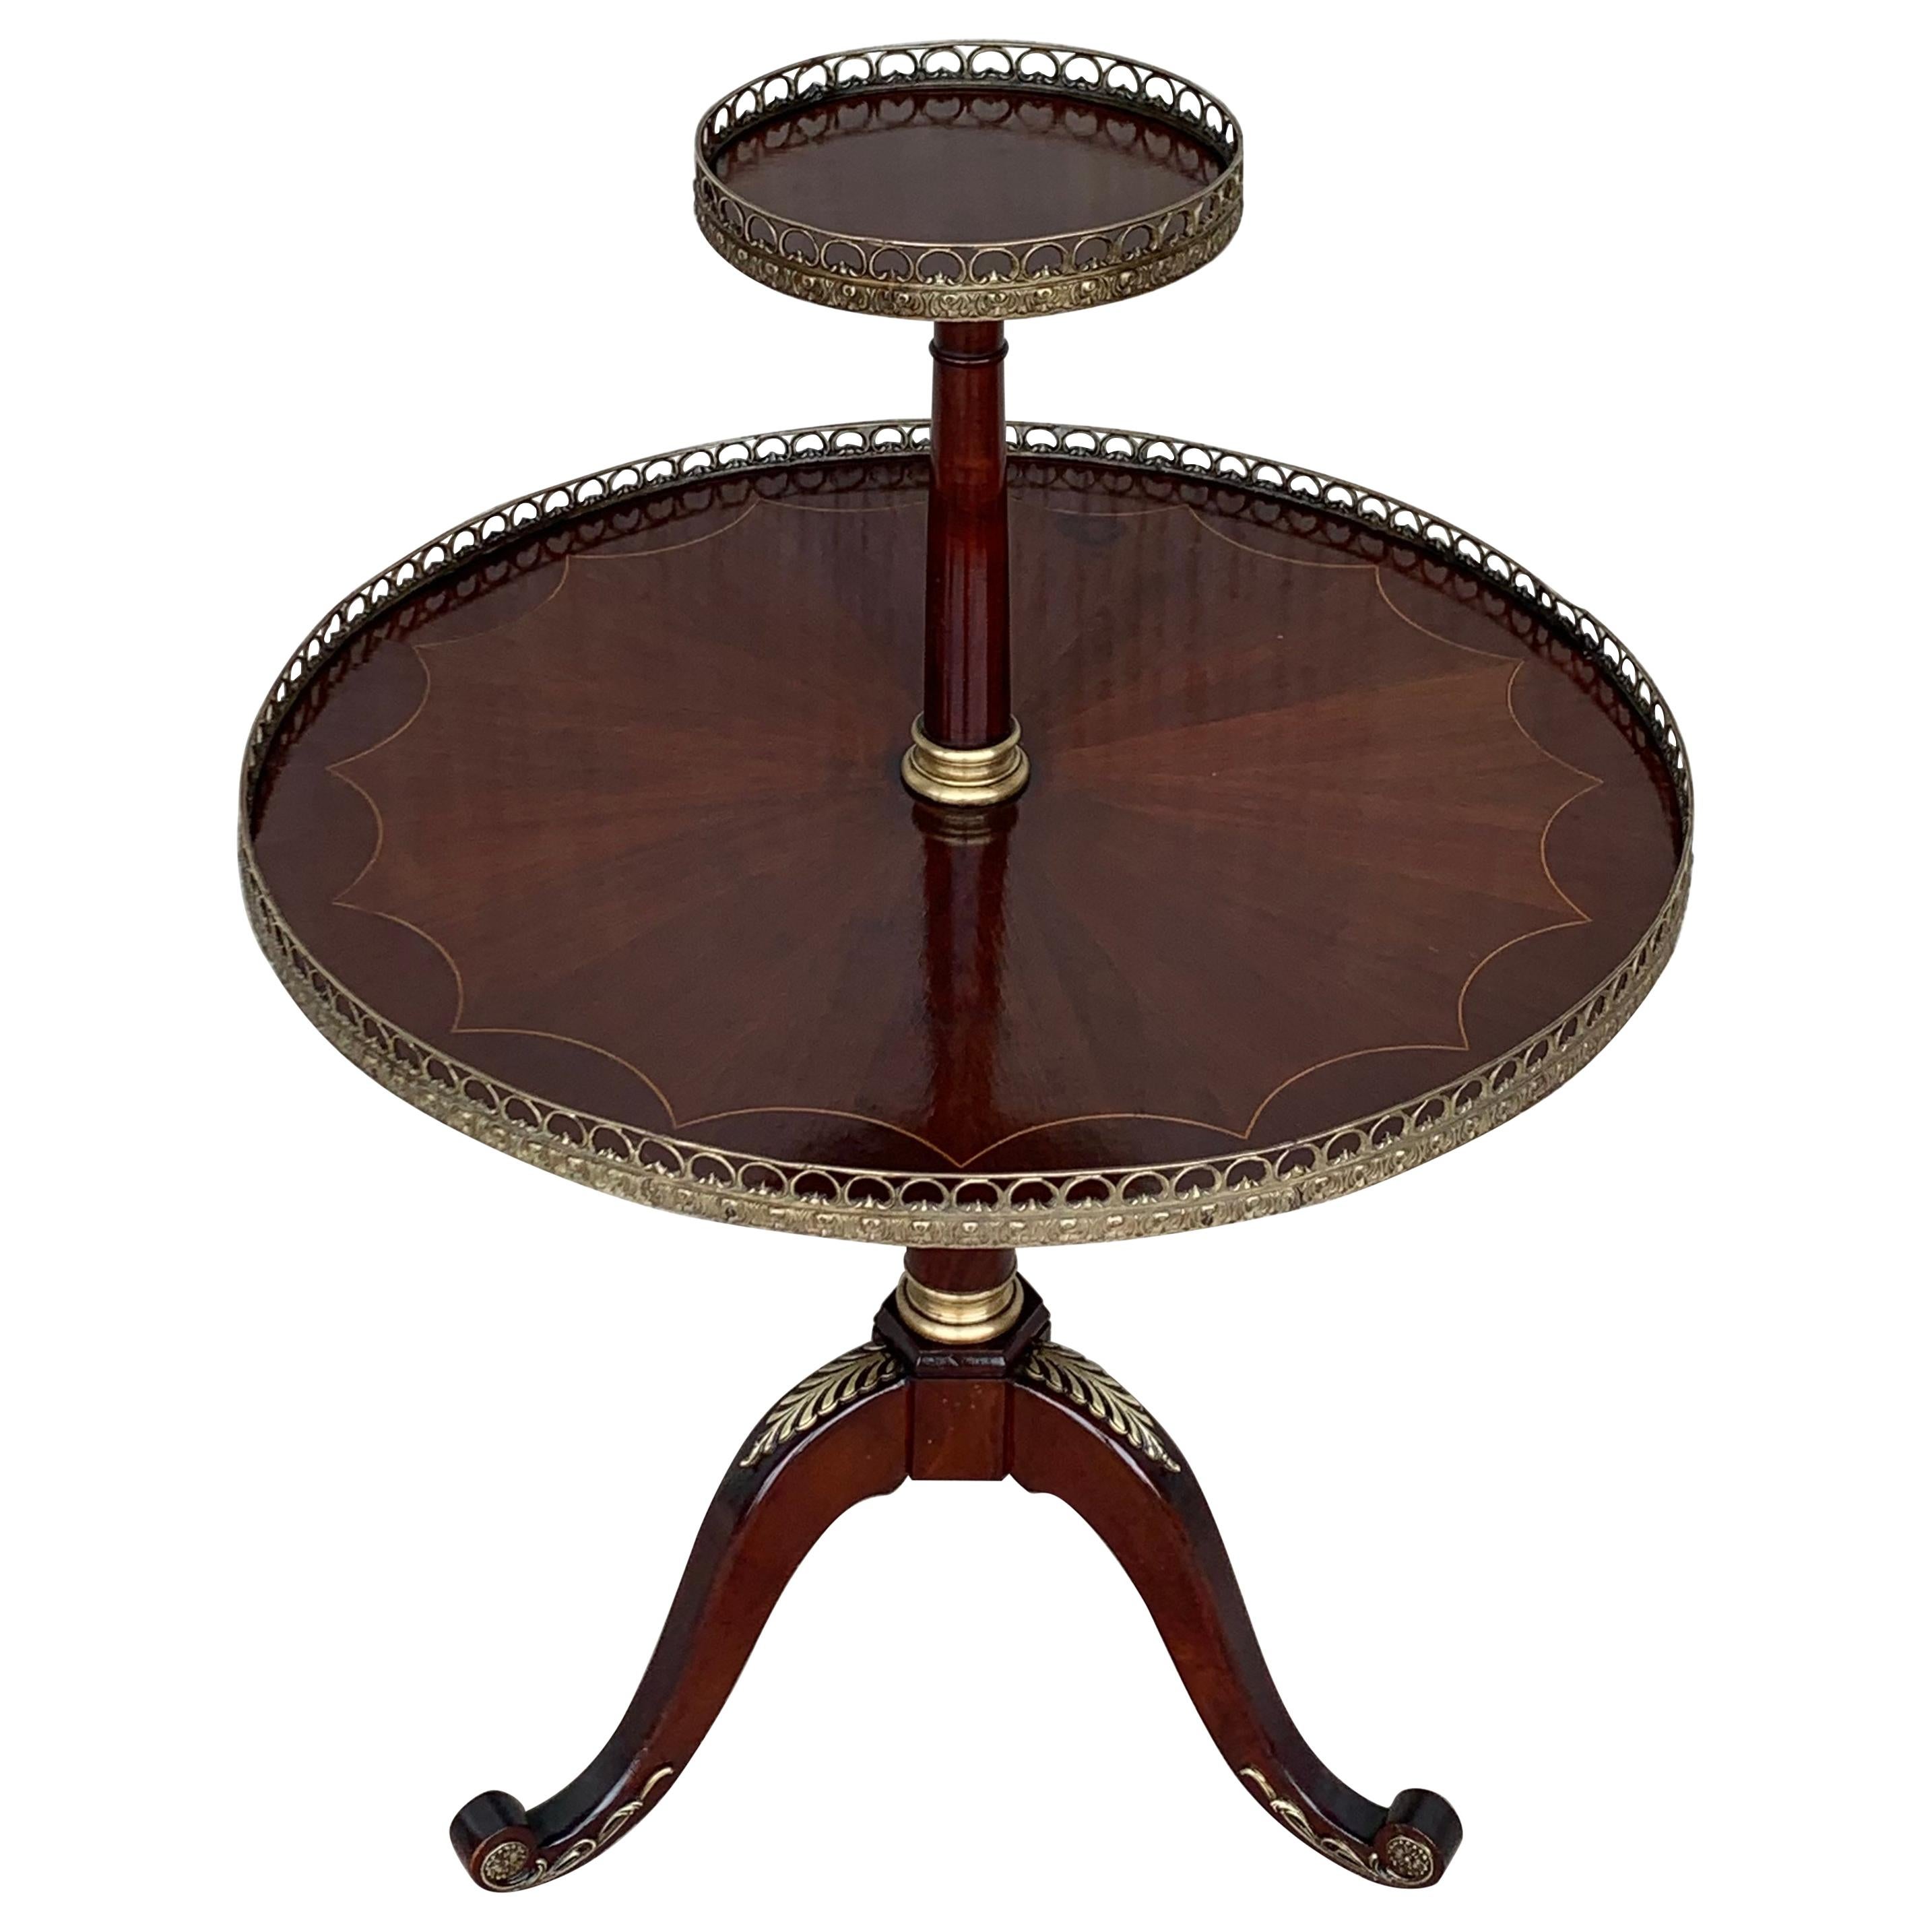 Runder zweistöckiger Bouillotte-Tisch aus Mahagoni im Louis-XVI.-Stil von Jansen im Stil von Jansen